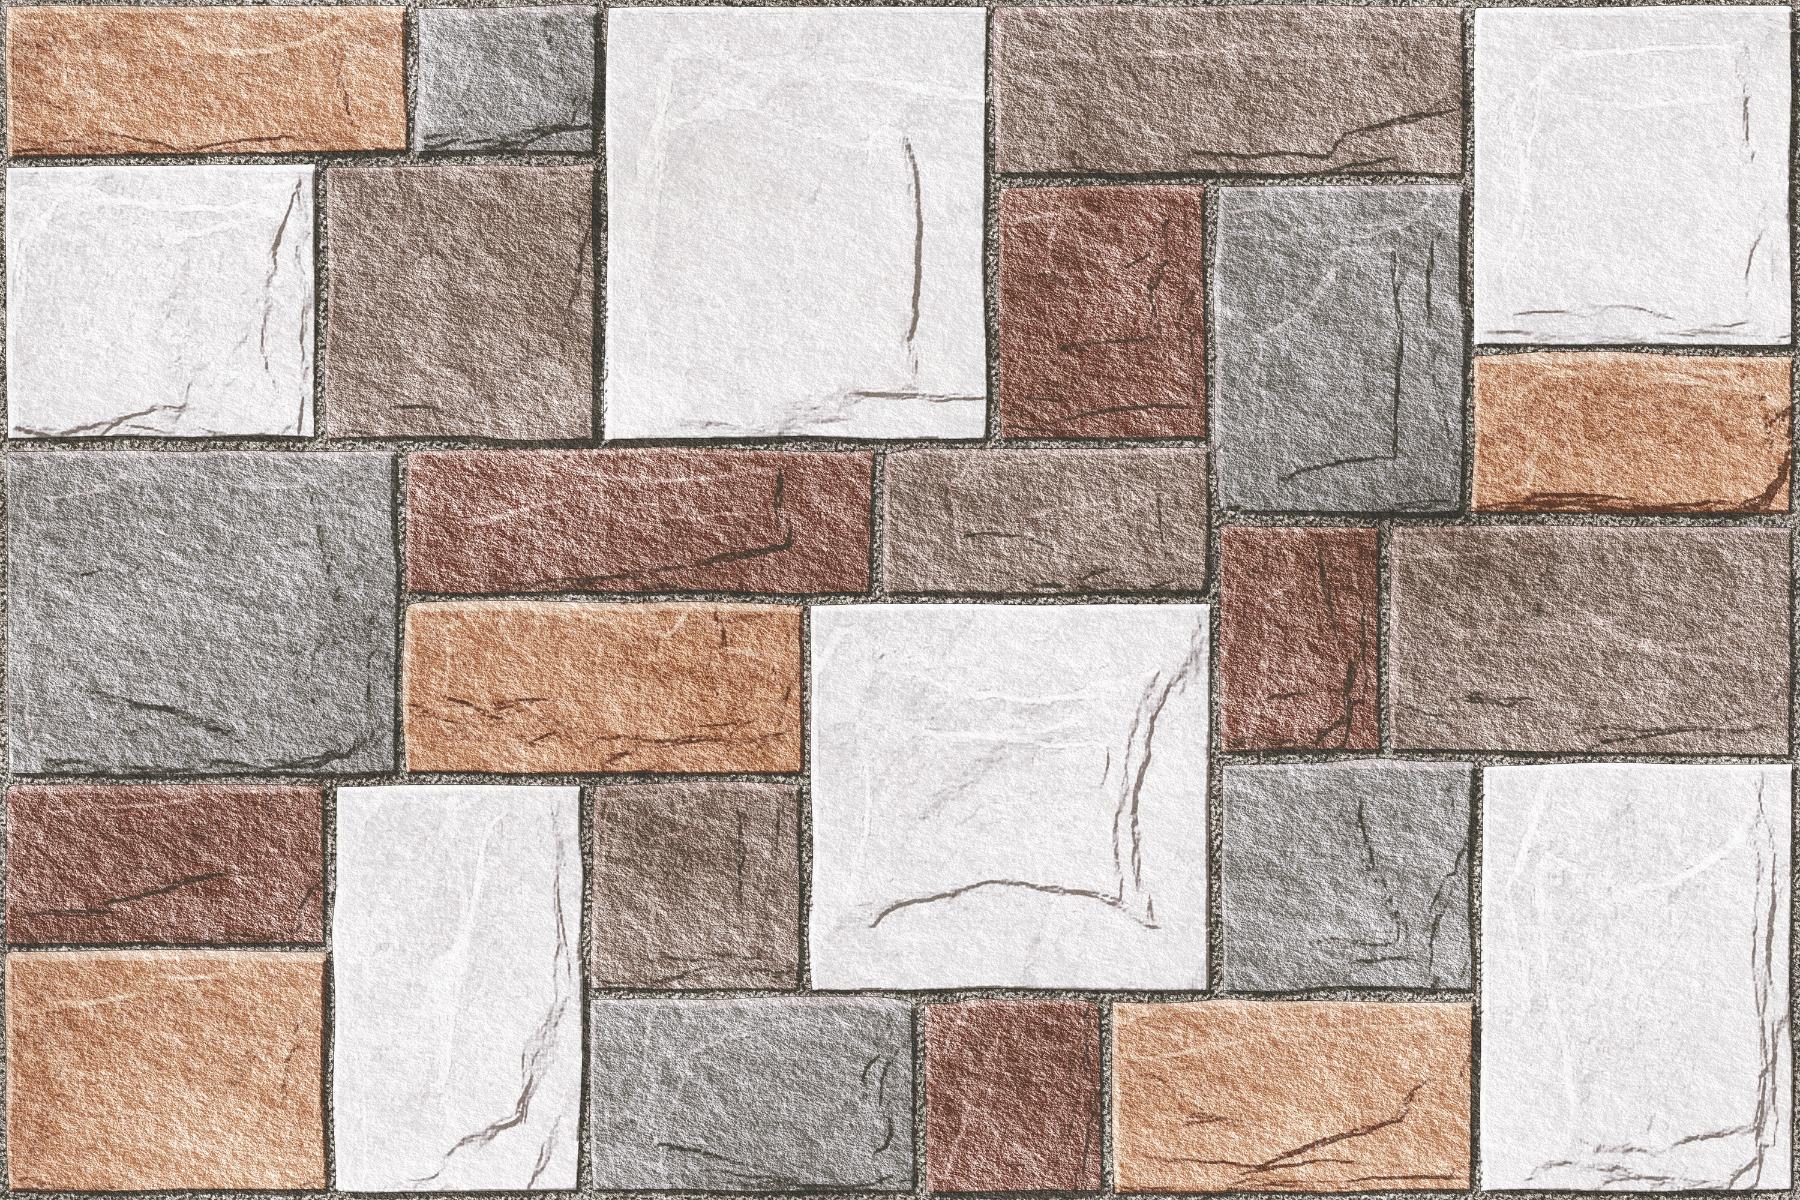 White Tiles for Bathroom Tiles, Living Room Tiles, Kitchen Tiles, Bedroom Tiles, Elevation Tiles, Balcony Tiles, Accent Tiles, Bar/Restaurant, Commercial/Office